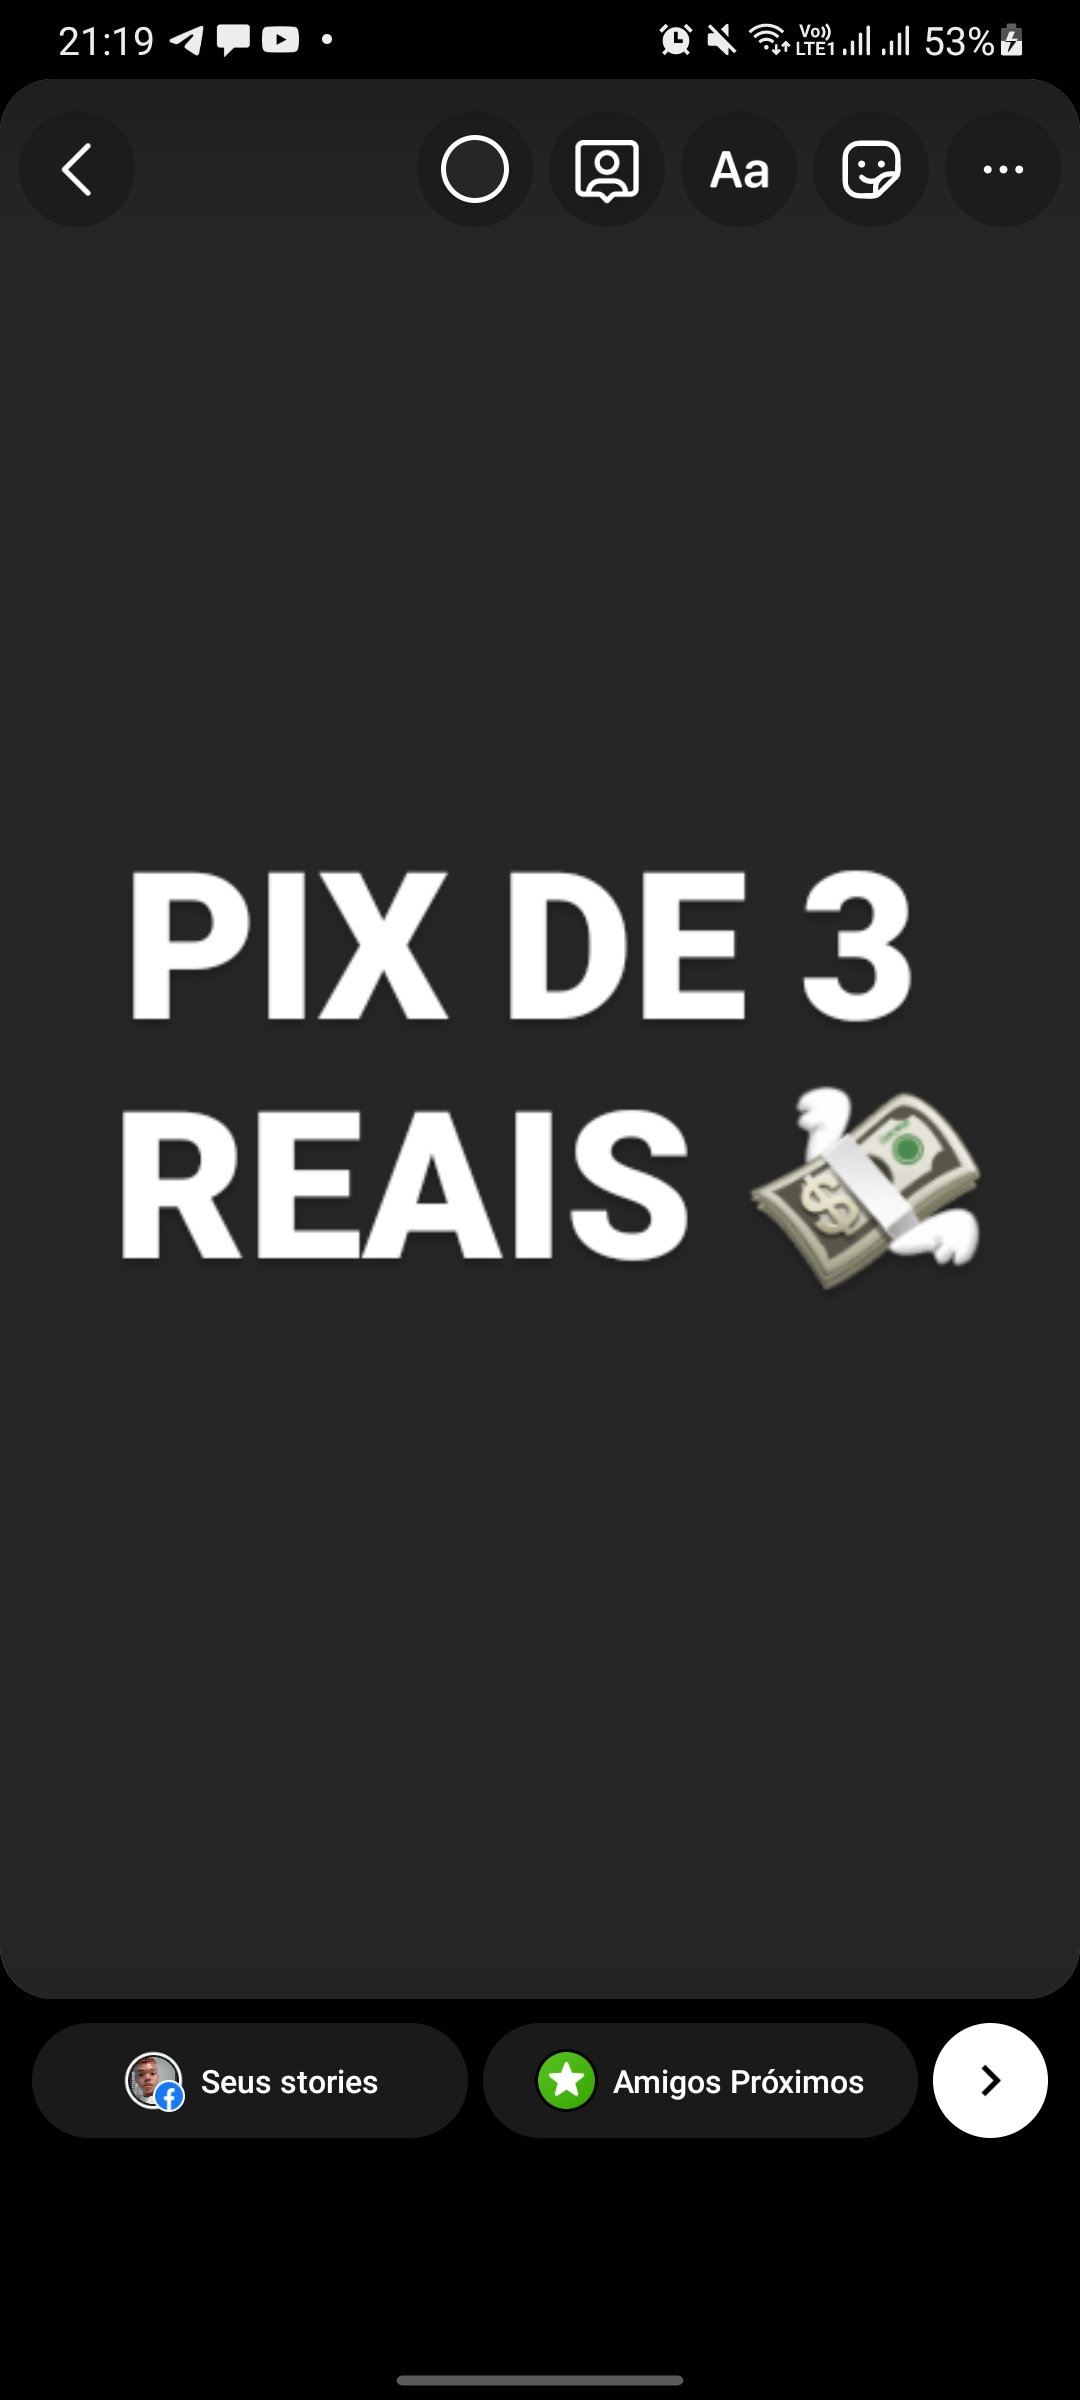 PIX DE 3 REAIS